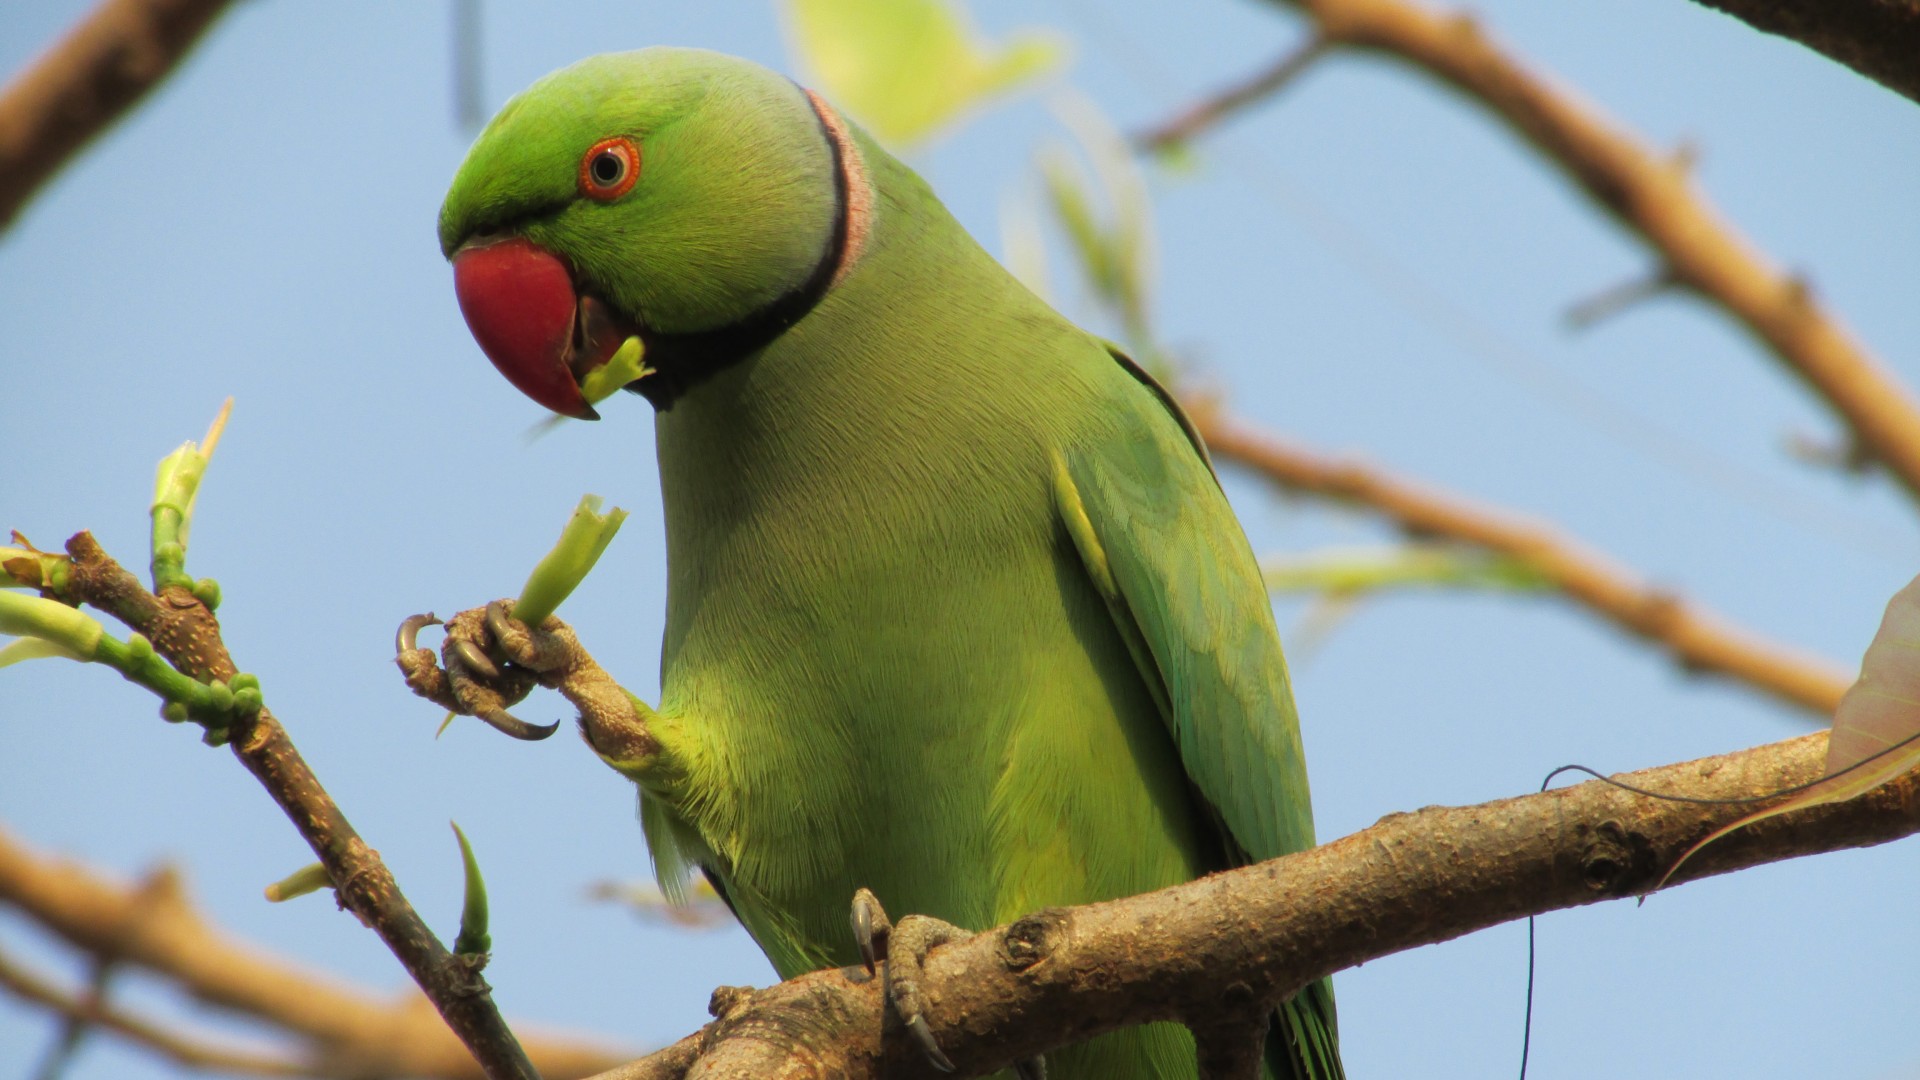 Indian ring parakeet, Australia, Great Britain, United States, tourism, green, bird, branch, nature (horizontal)